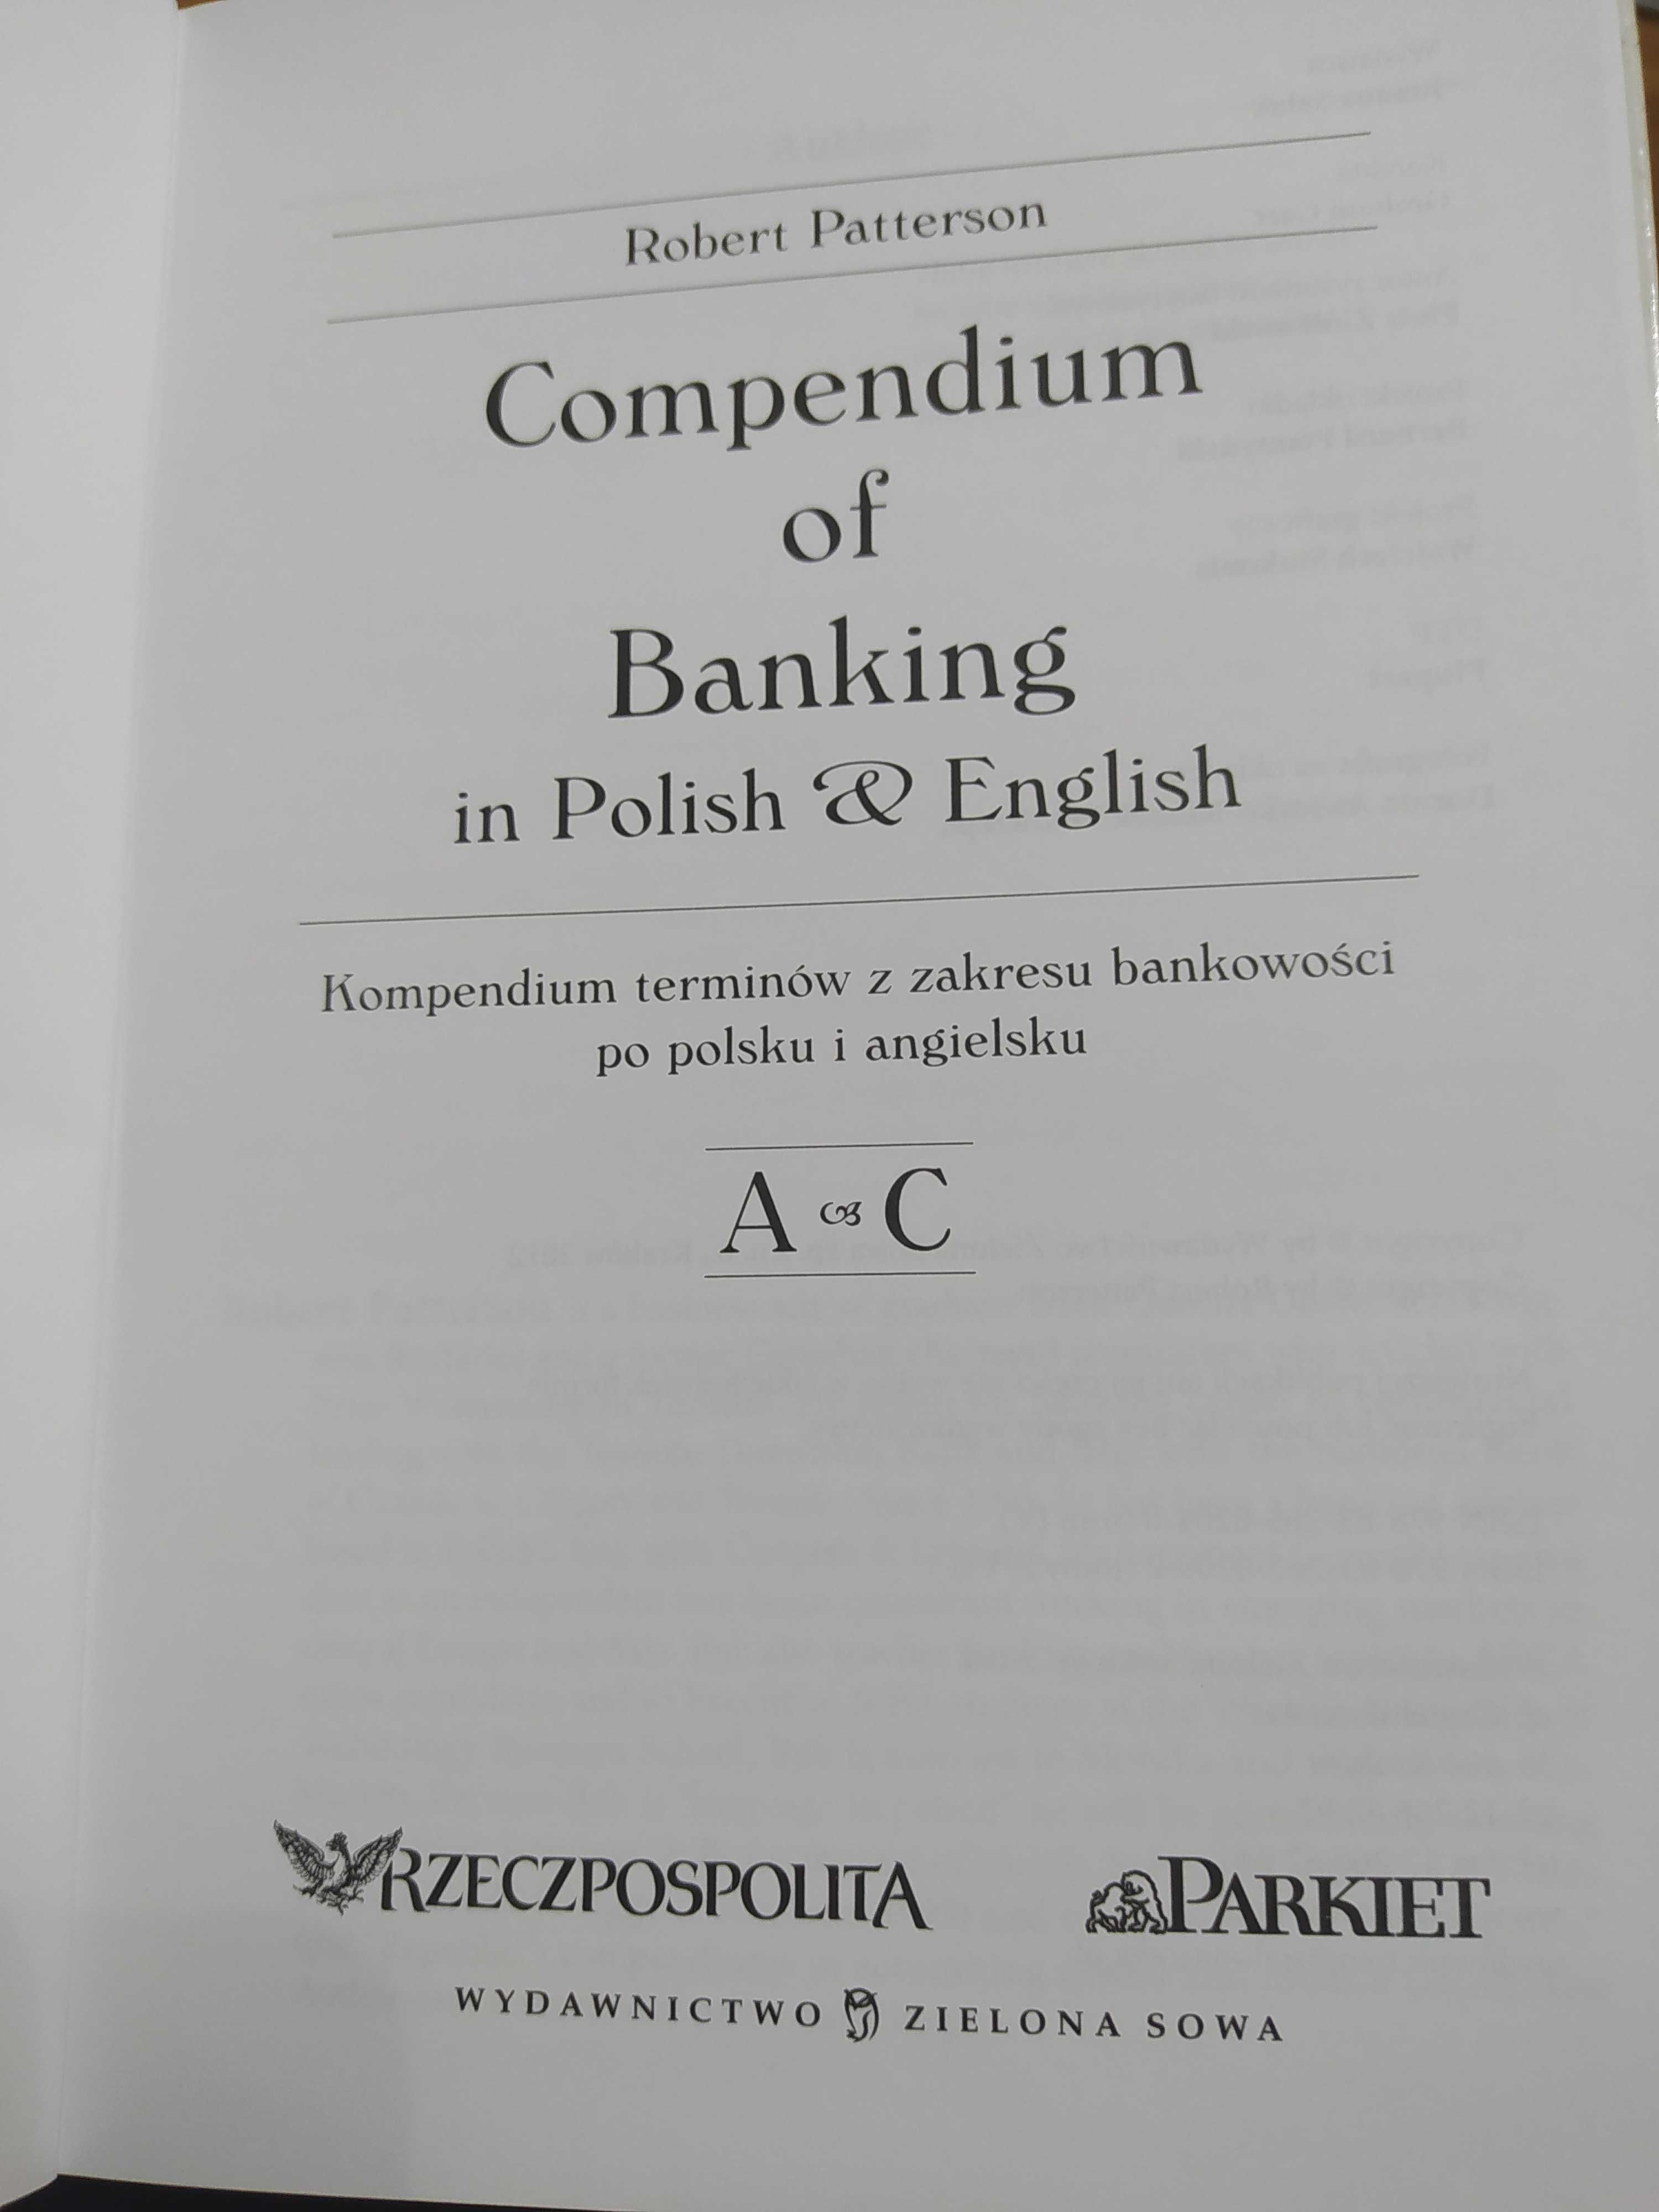 Kompendium terminów bankowości, od A-C, angielski